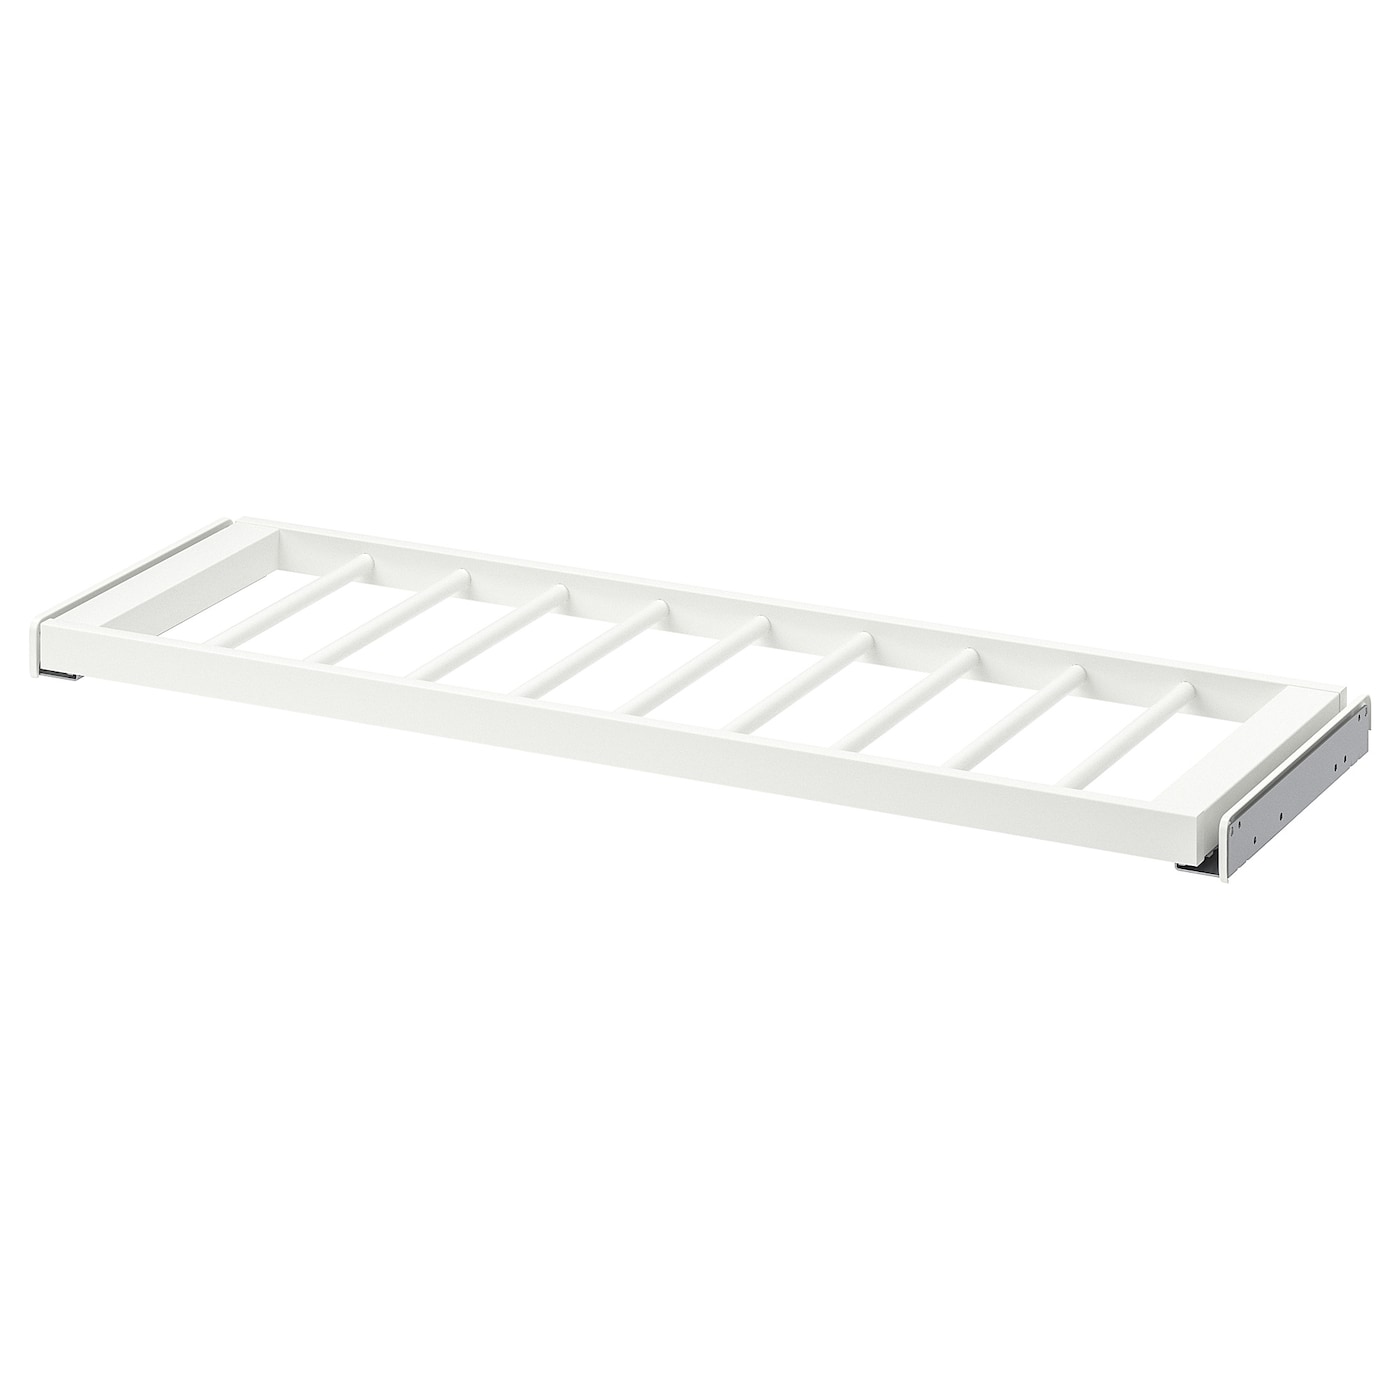 Выдвижная вешалка для брюк - IKEA KOMPLEMENT/КОМПЛИМЕНТ ИКЕА, 100x35 см, белый